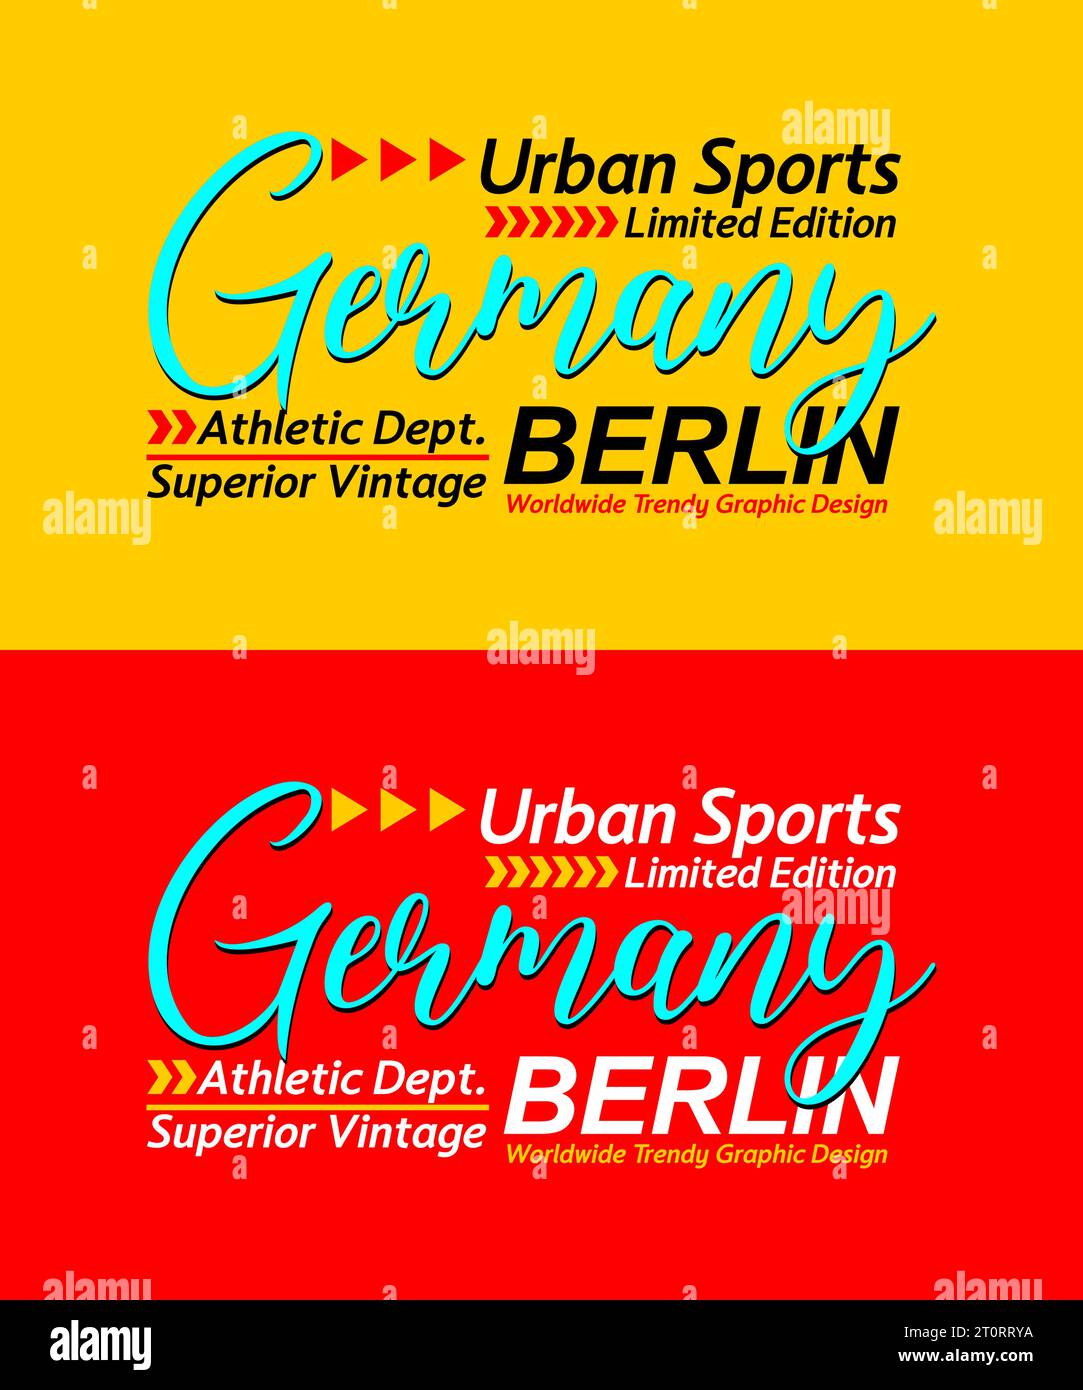 Allemagne calligraphie urbaine typeface supérieure vintage, typographie, pour t-shirt, affiches, étiquettes, etc Illustration de Vecteur